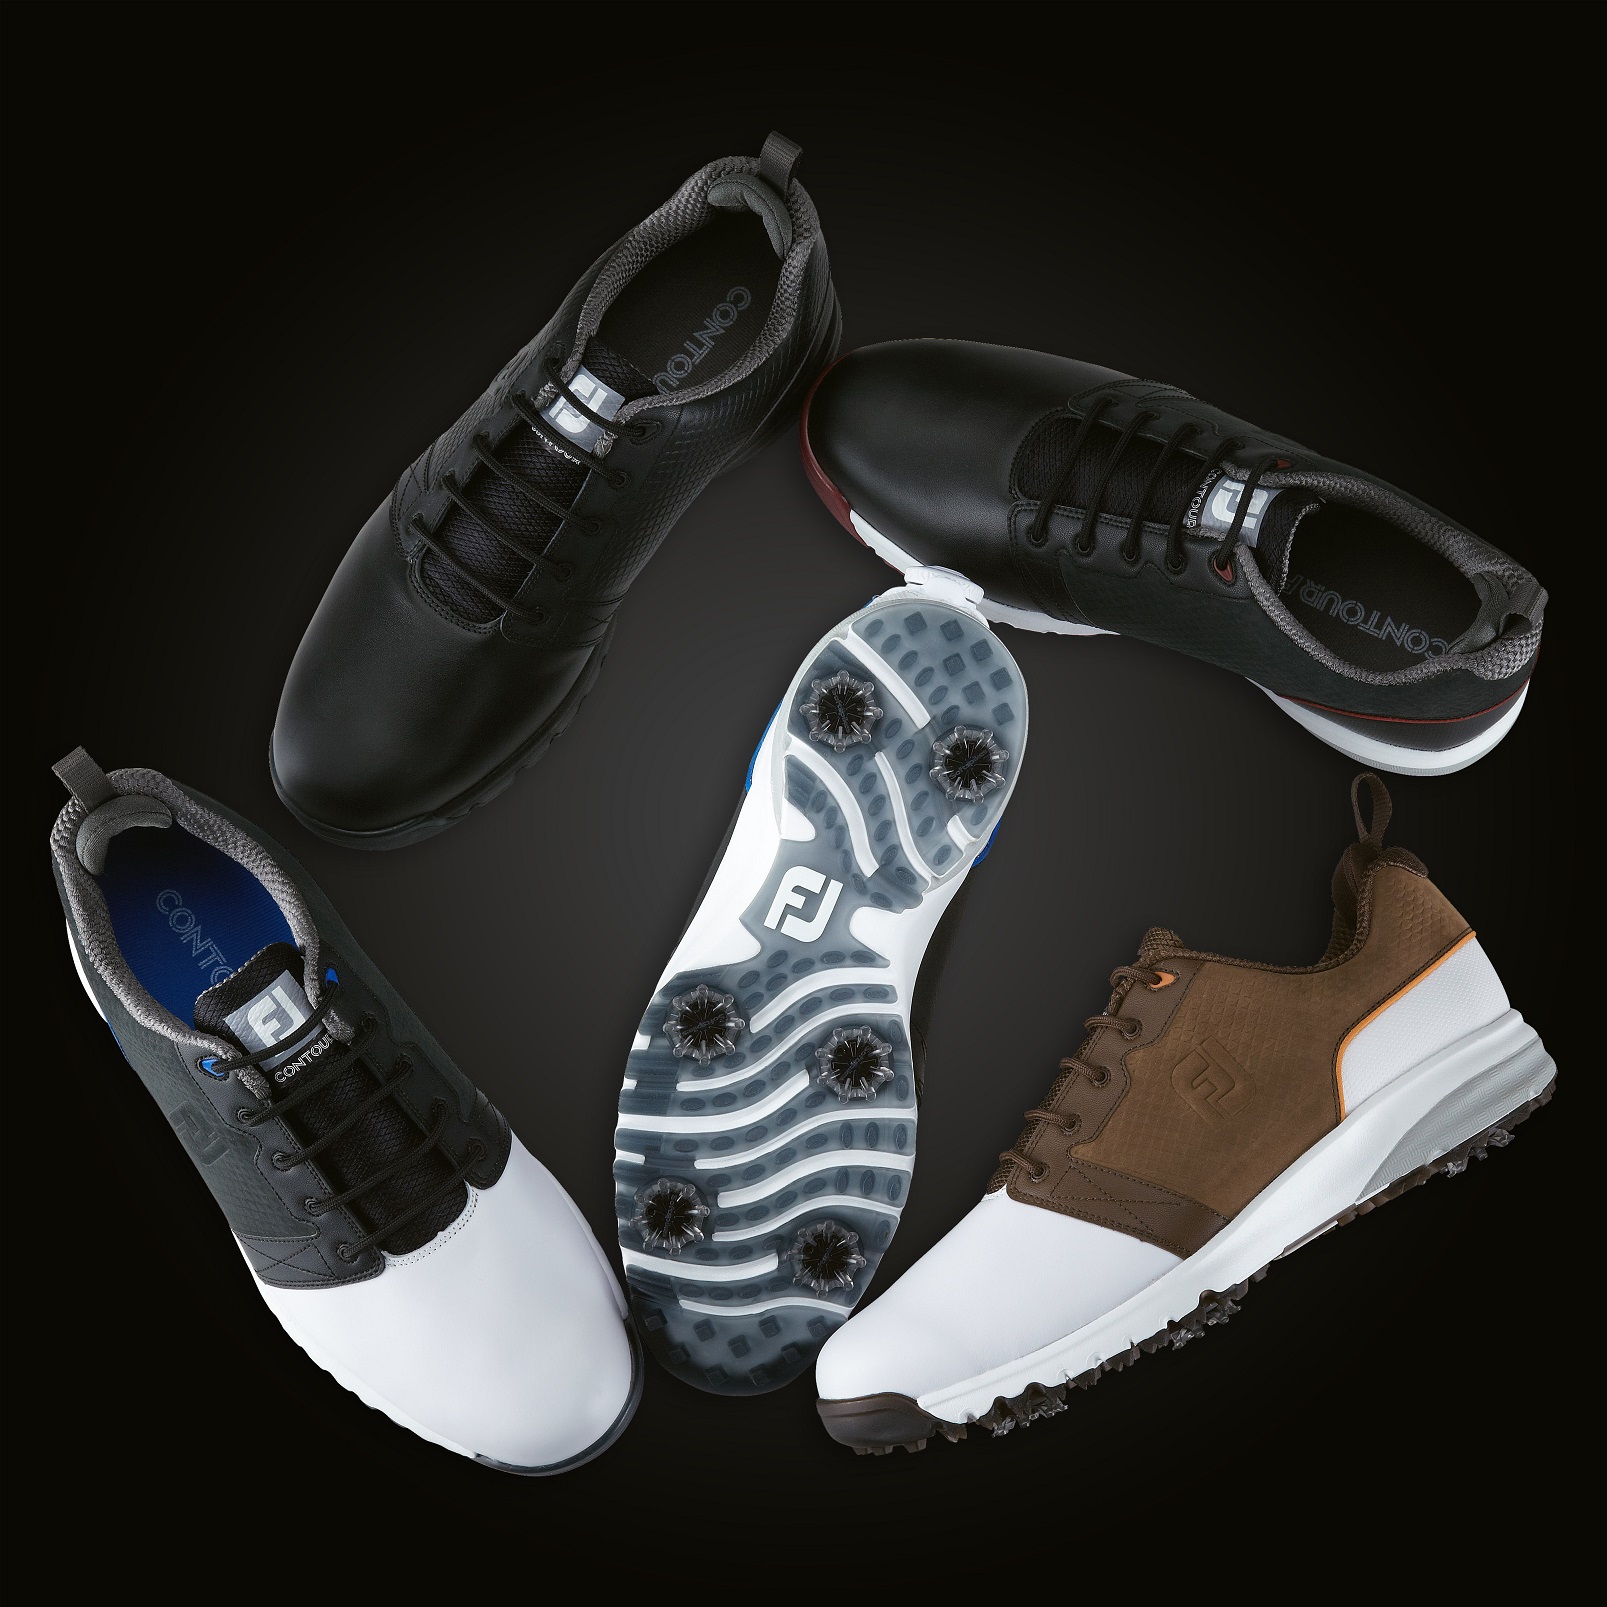 FootJoy launches ContourFIT golf shoes